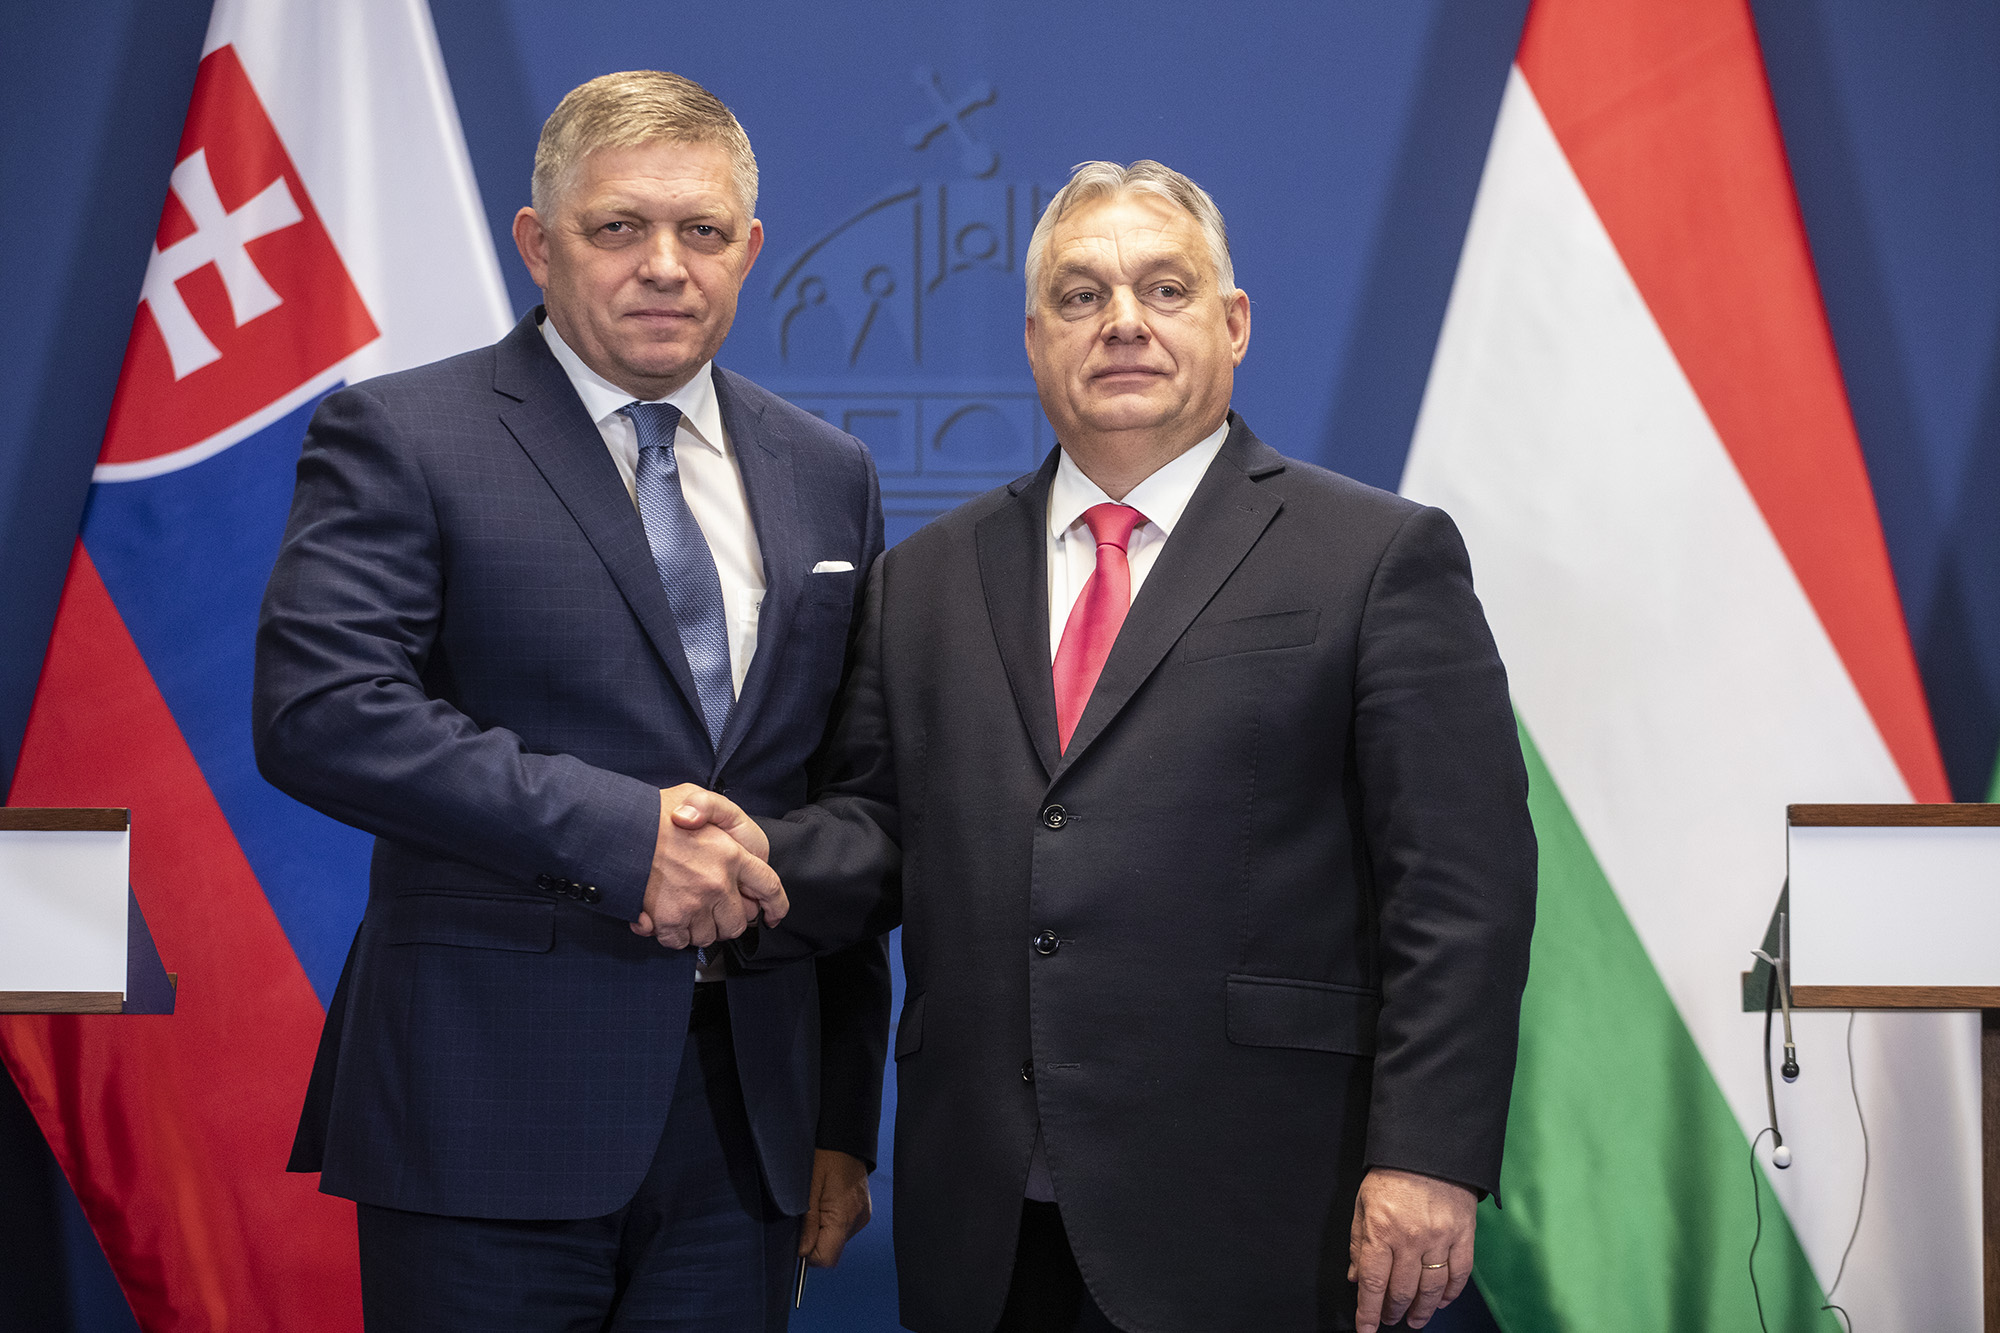 Fico nem engedi, hogy Magyarországot megbüntessék